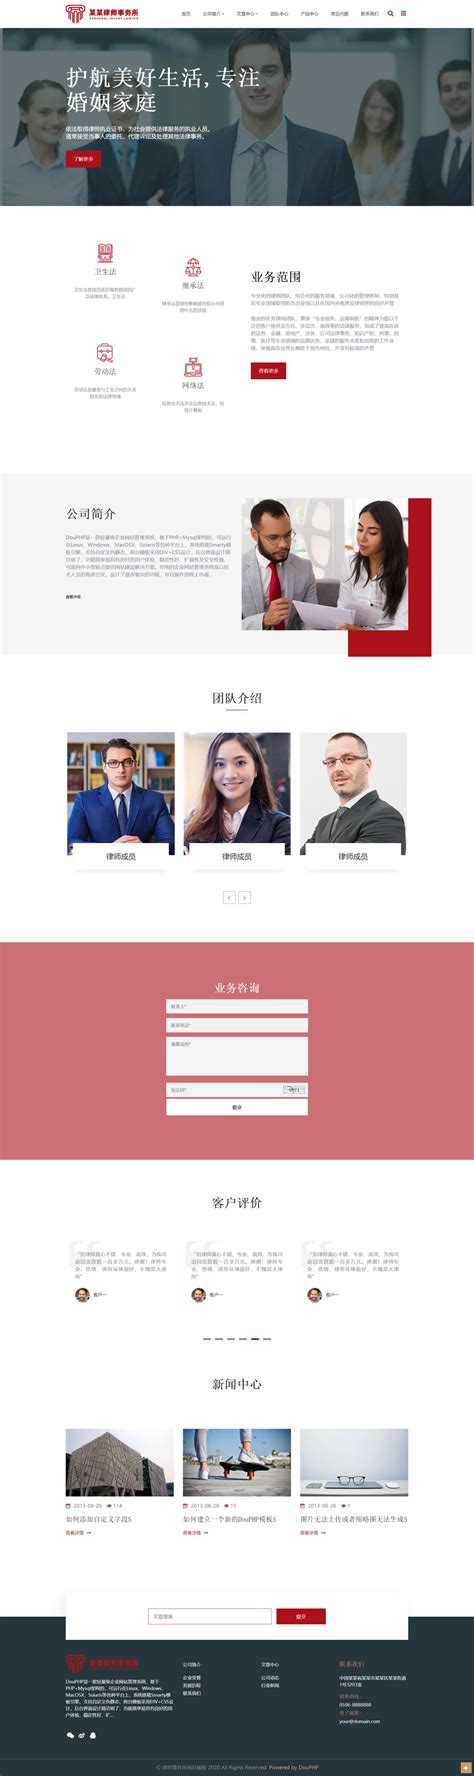 简约律师行业网站首页ui界面设计素材-千库网